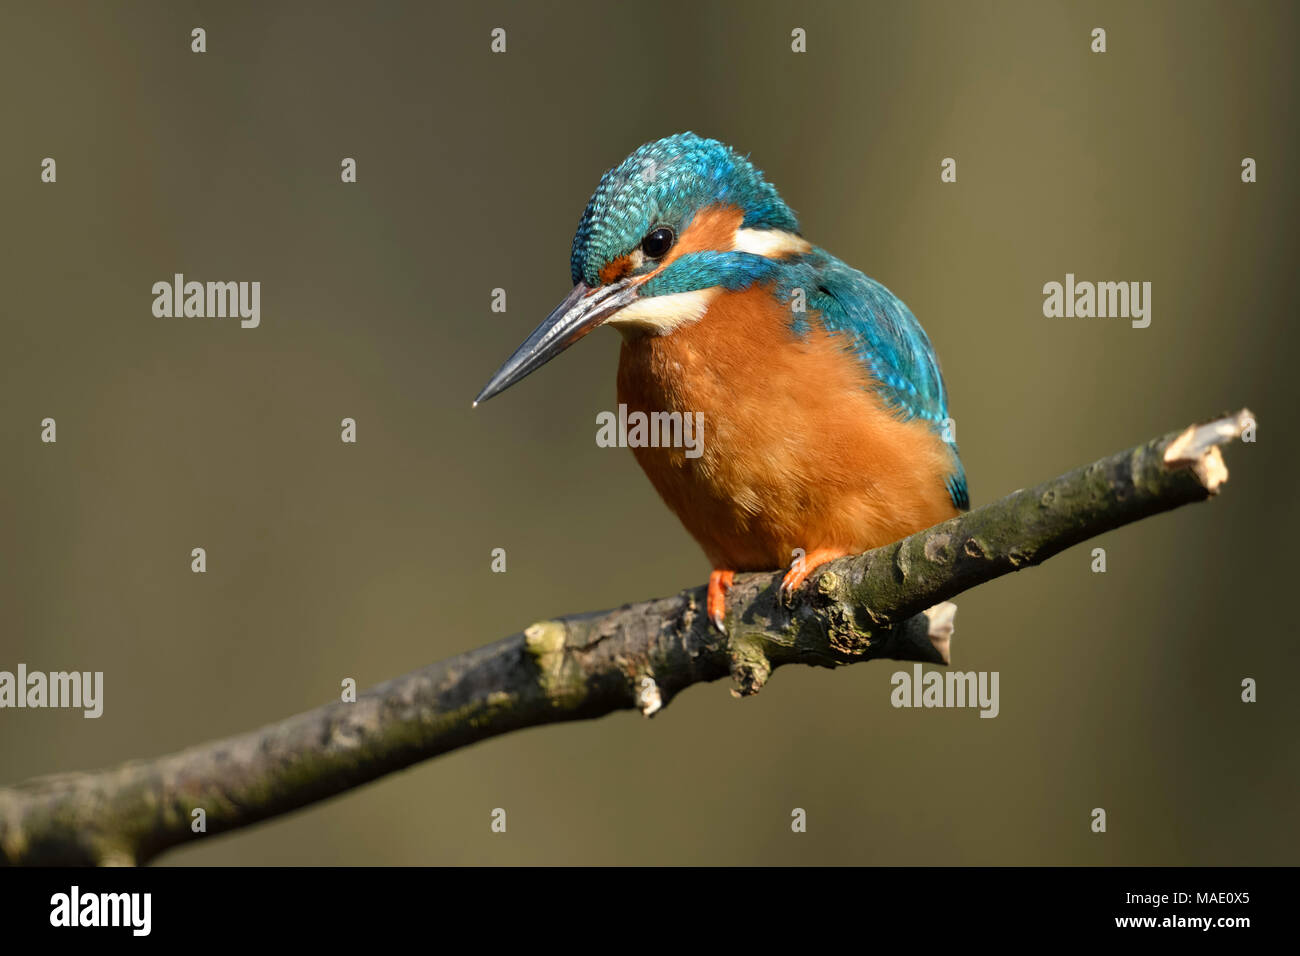 / Kingfisher Alcedo atthis Optimize ( ), homme oiseau, perché sur une branche pour la chasse, détail de la vue frontale, belle lumière, la faune, l'Europe. Banque D'Images